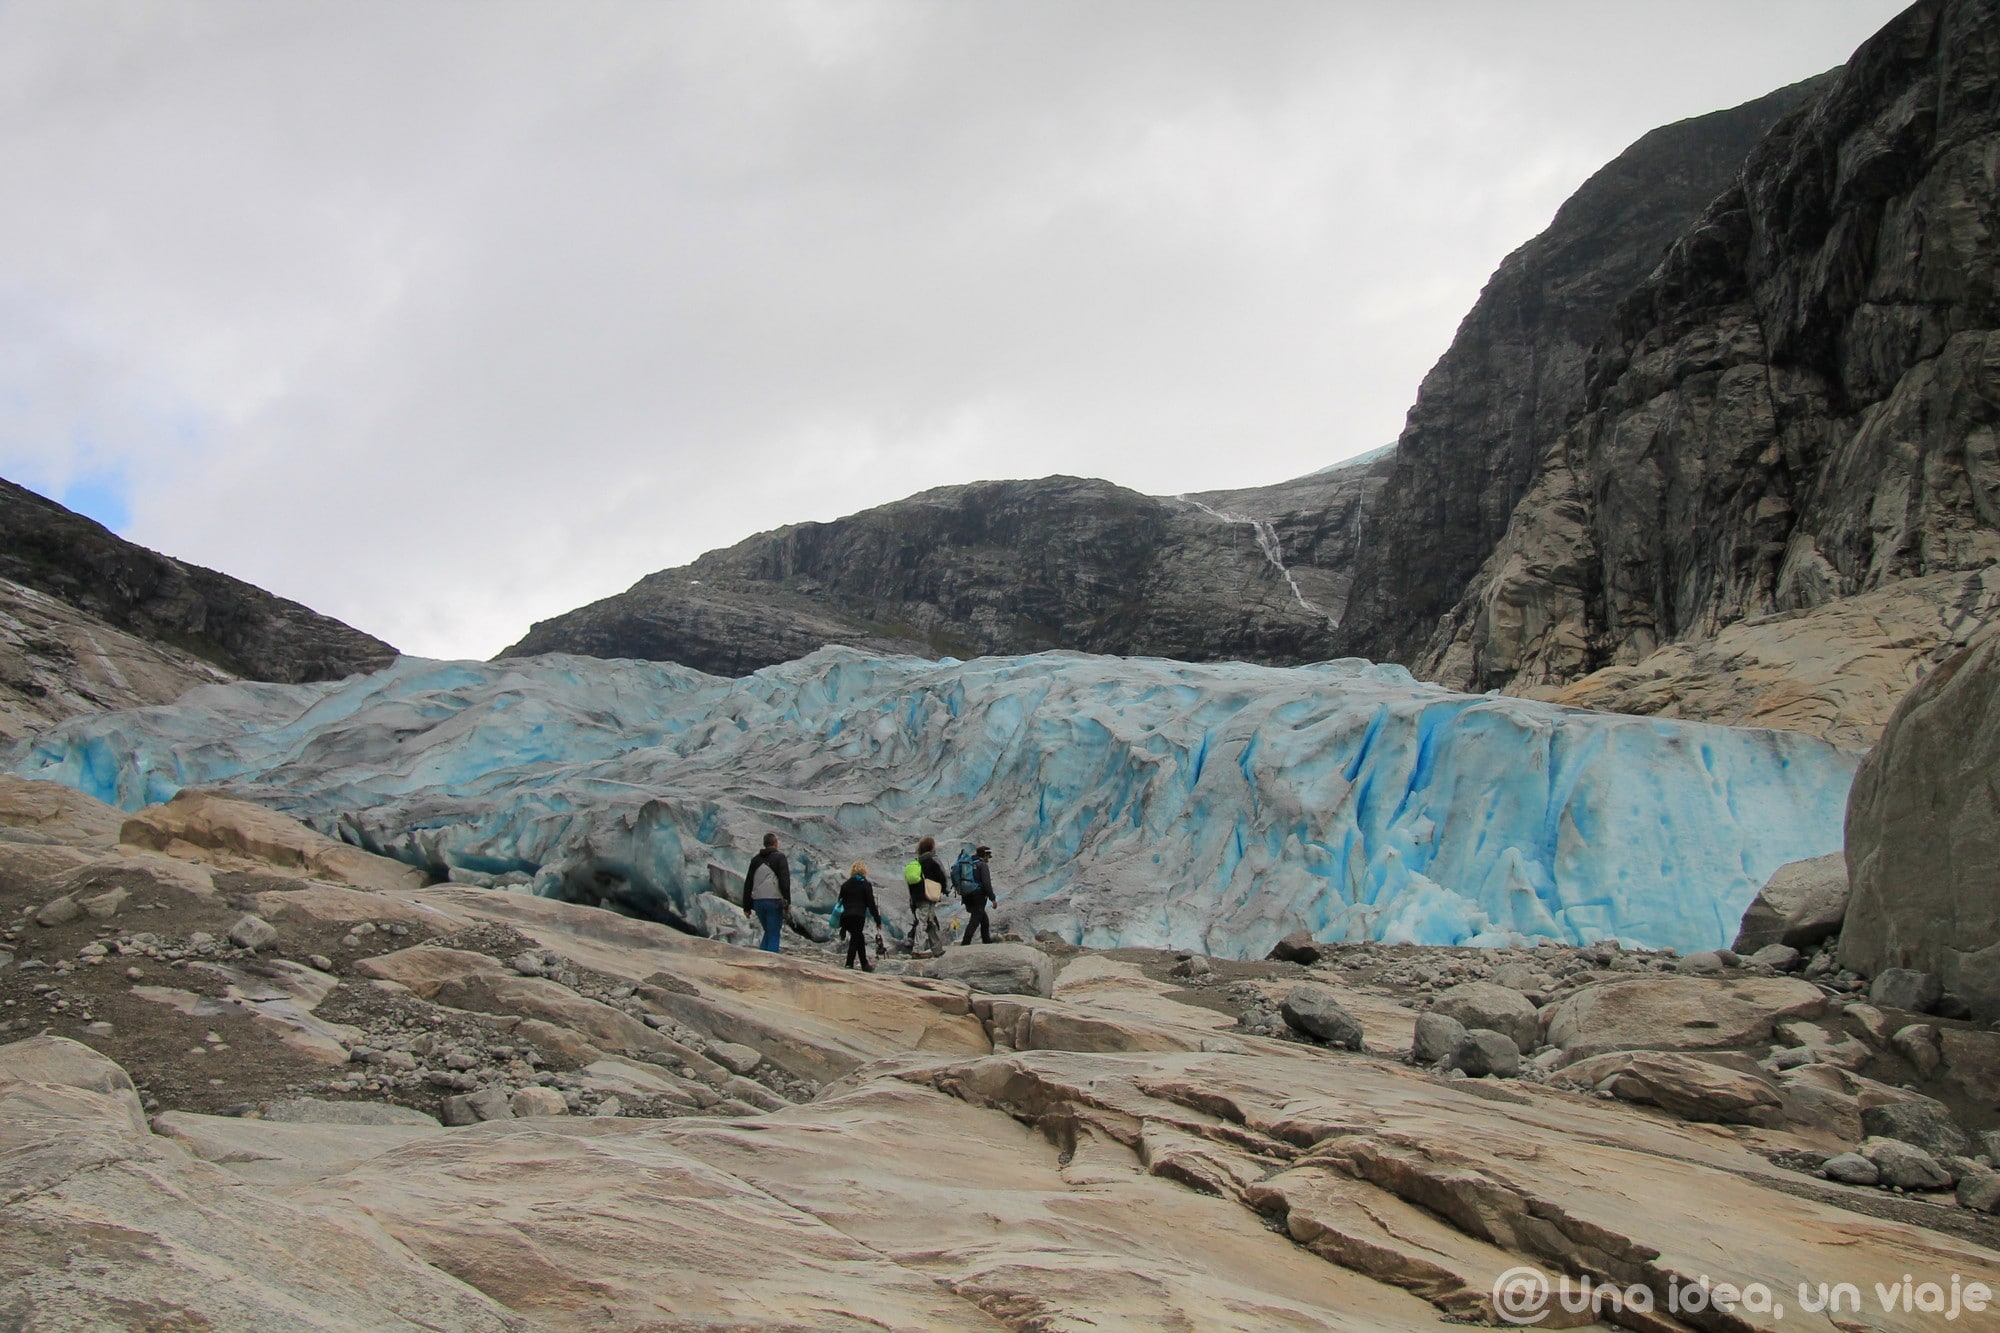 noruega-que-como-cuando-visitar-trekking-glaciar-jostedal-unaideaunviaje-15